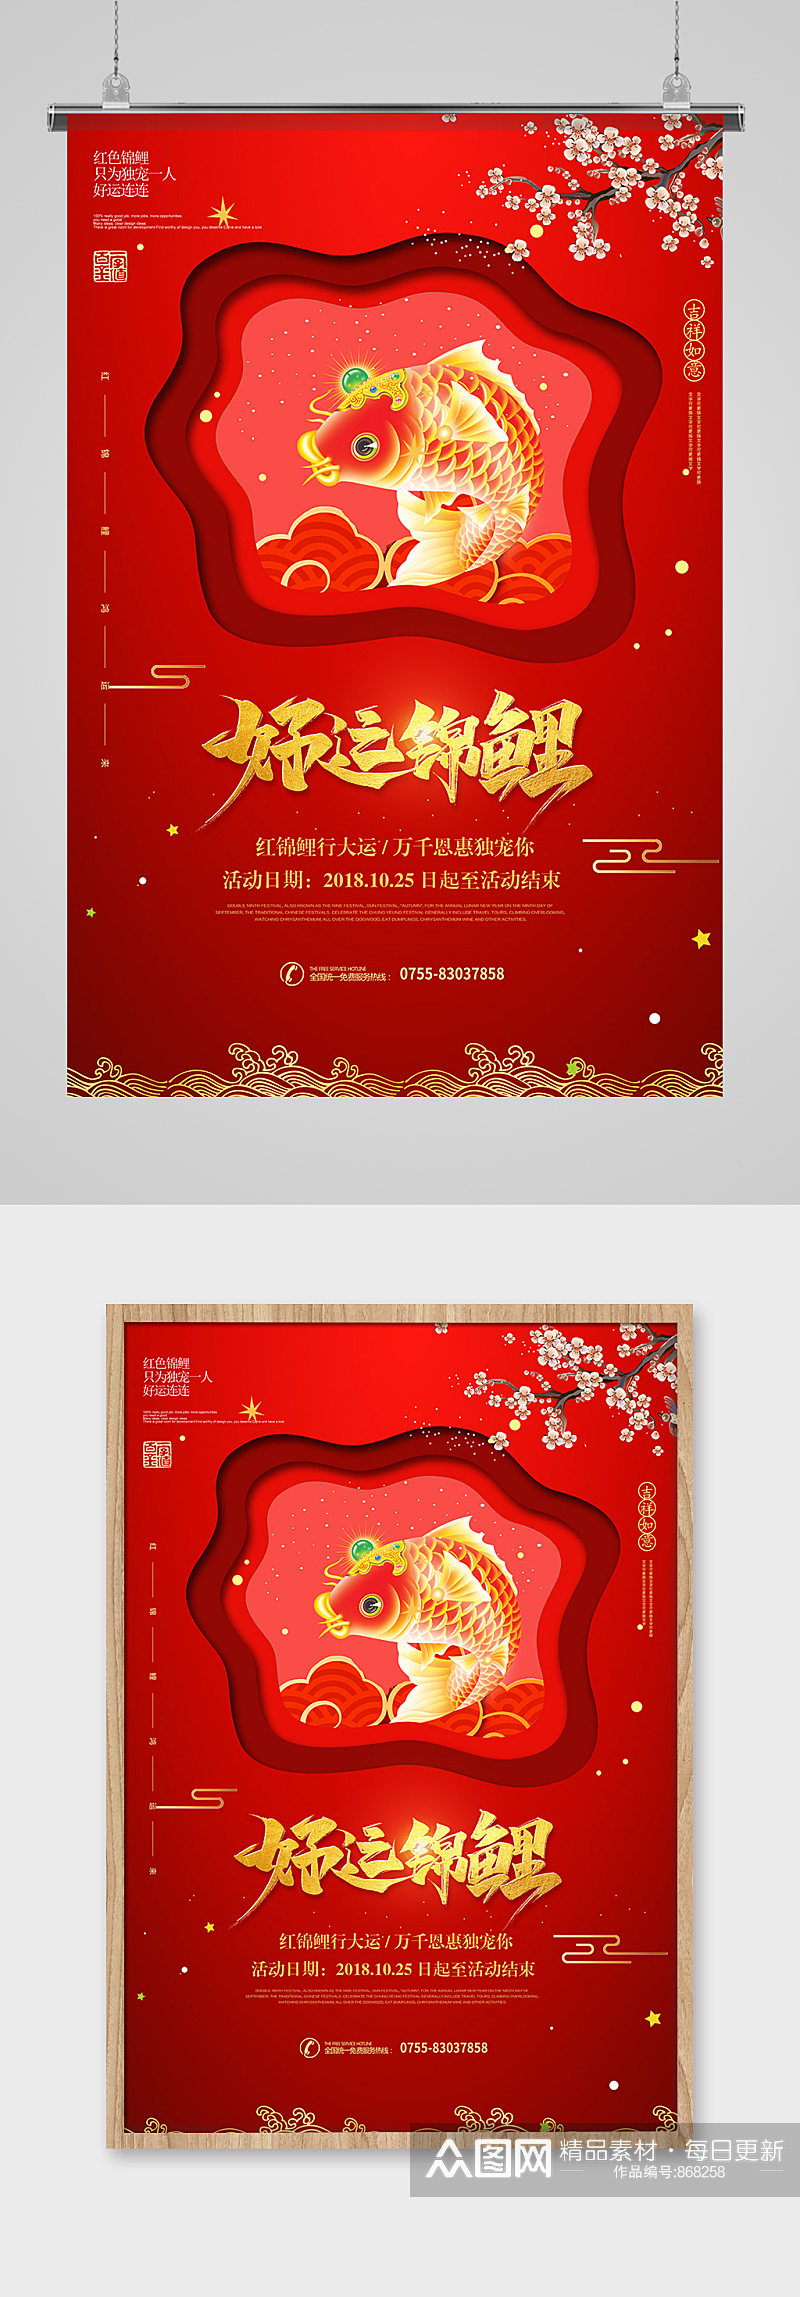 春节元旦新年促销海报设计素材